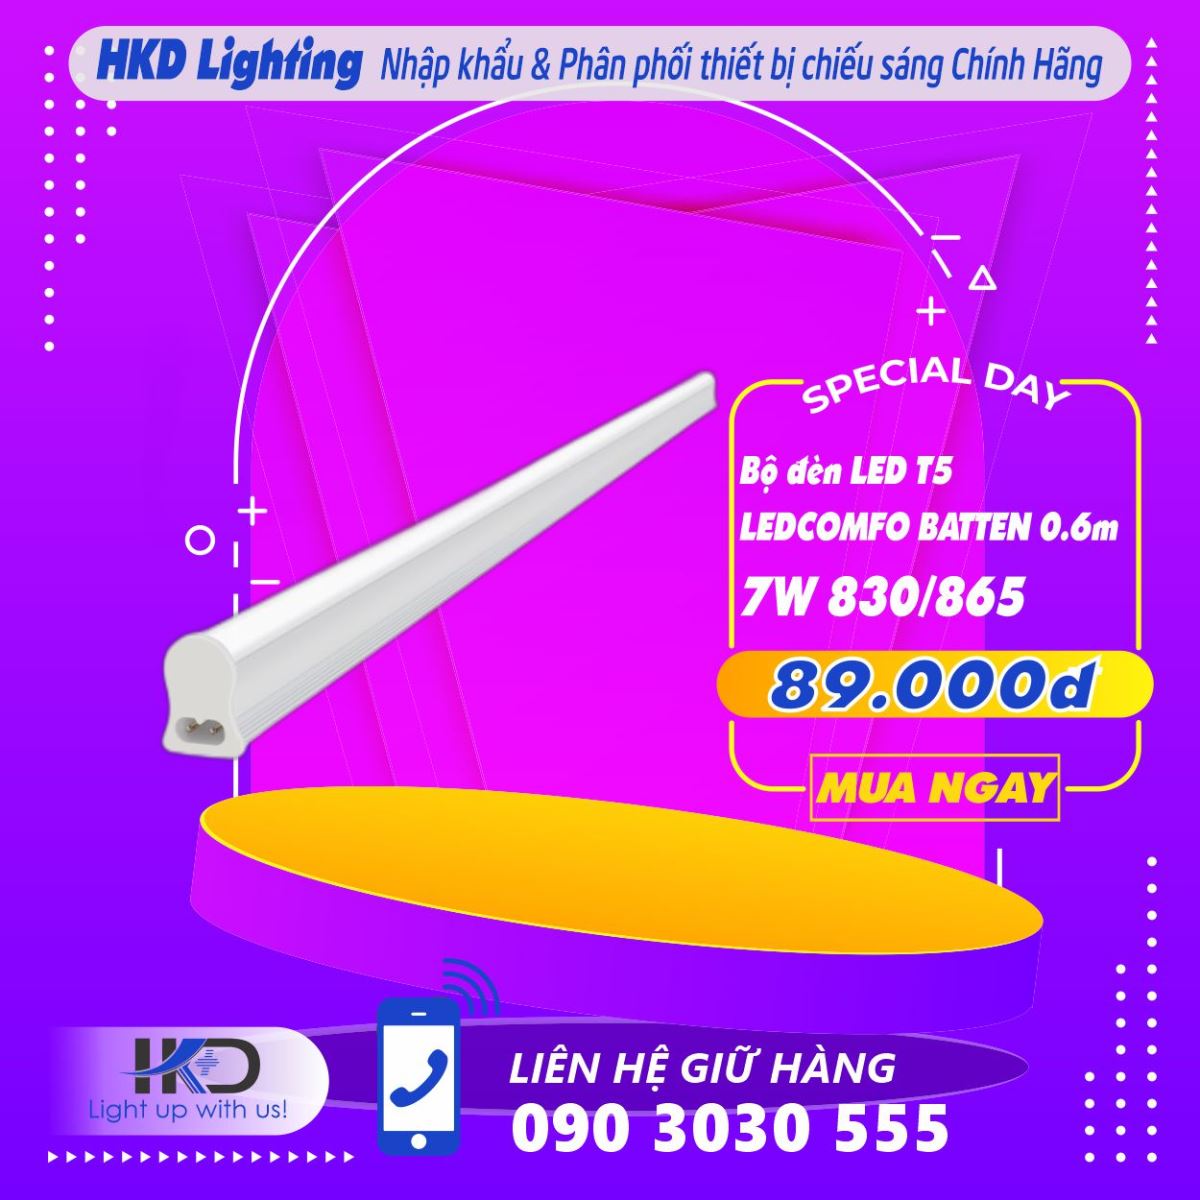 Bộ đèn LED T5 LEDCOMFO BATTEN 7W OSRAM - Lắp đặt dễ dàng, Ánh sáng chất lượng